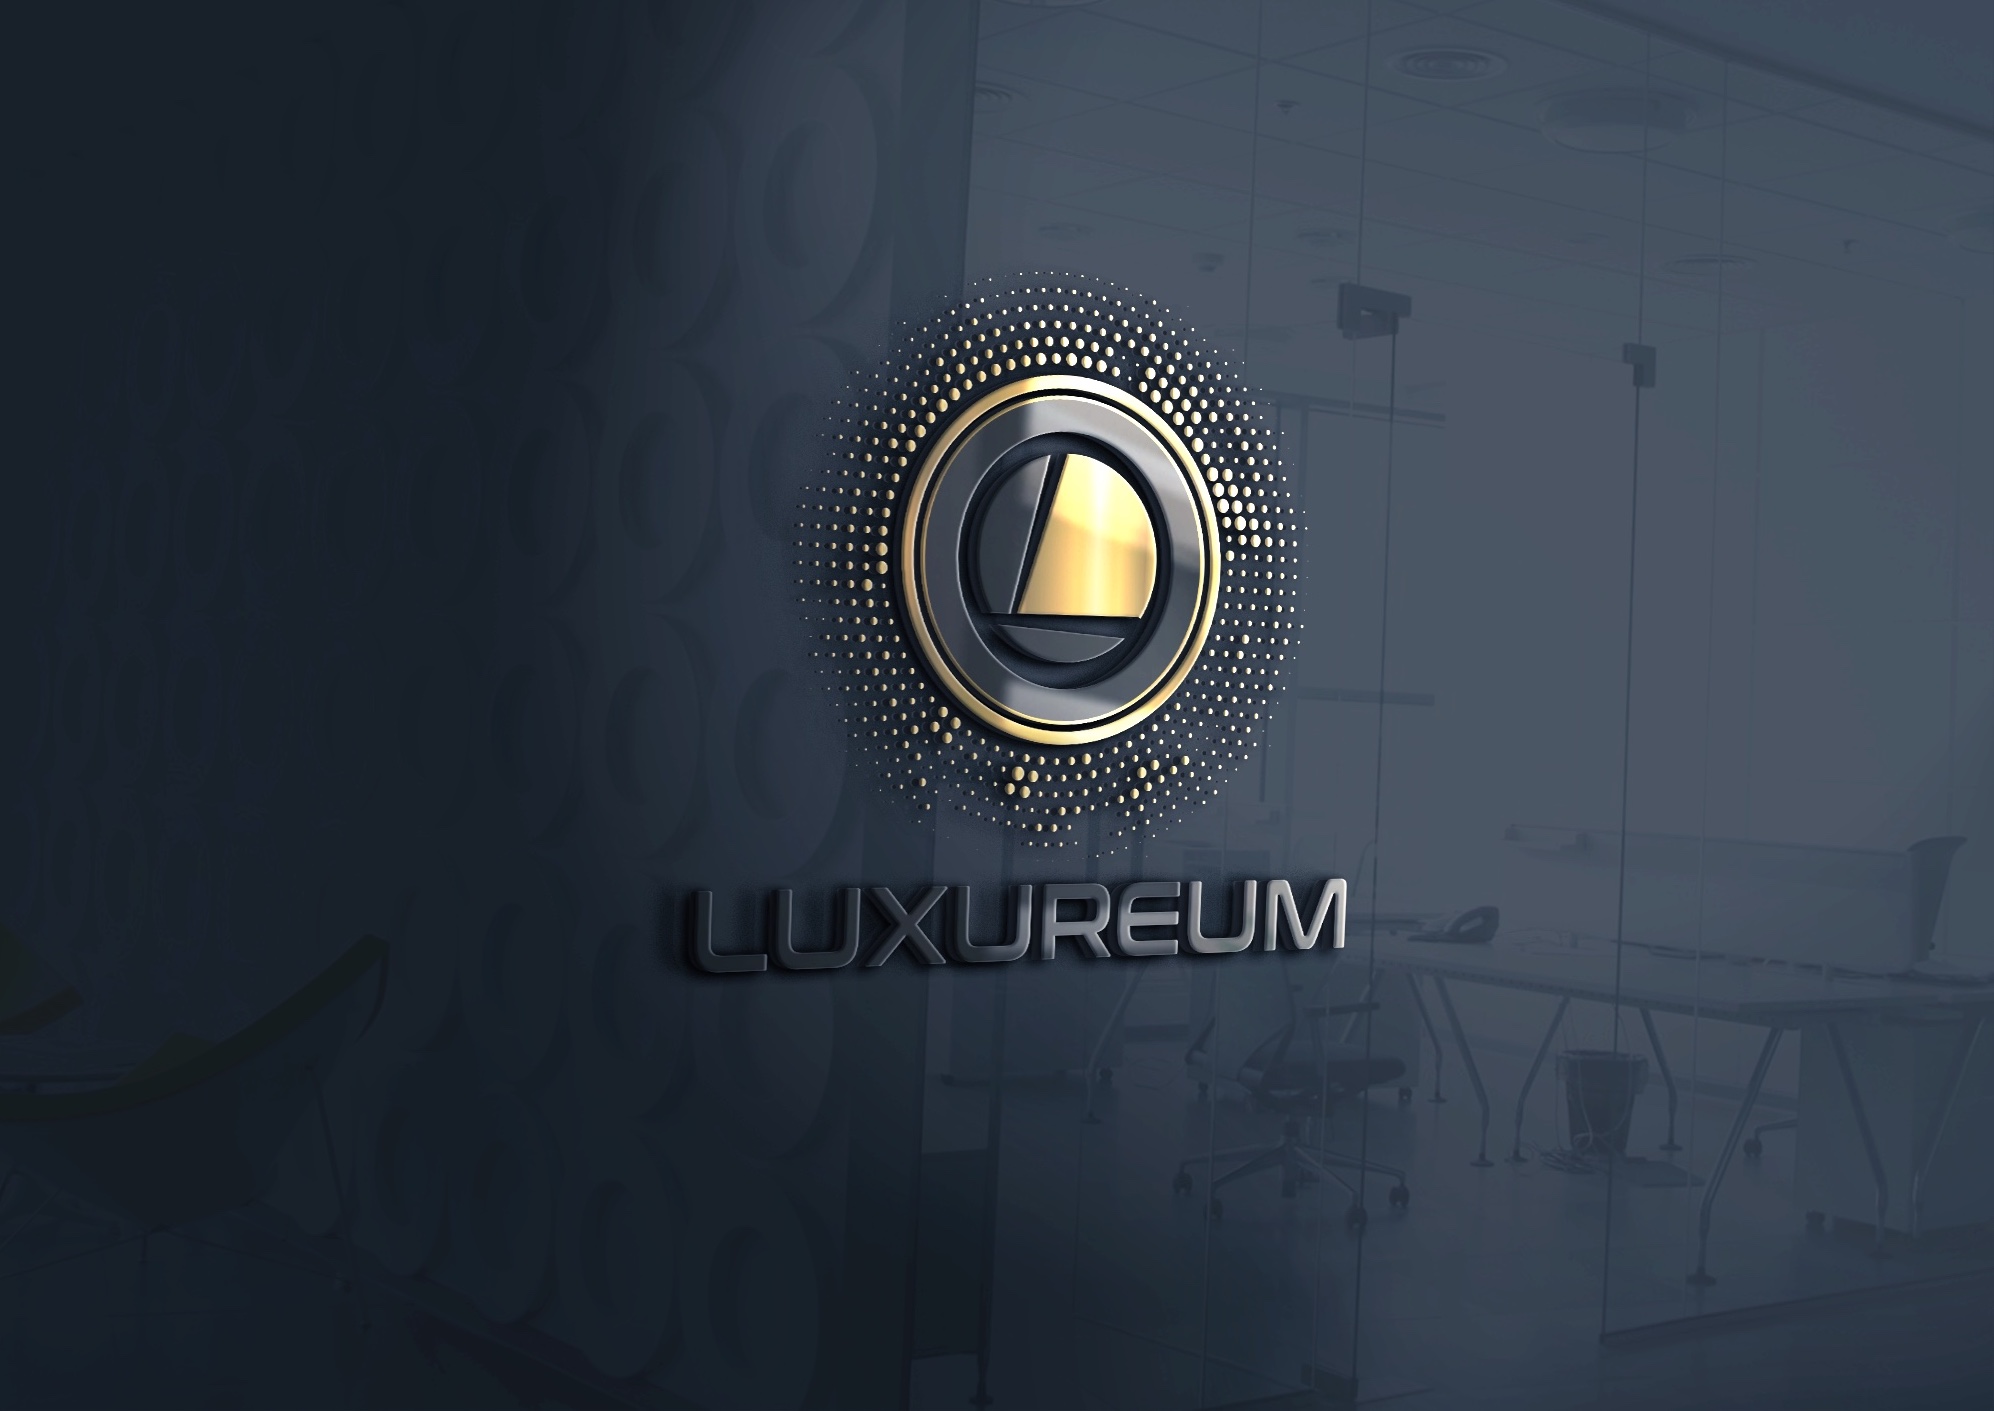 Luxureum logo